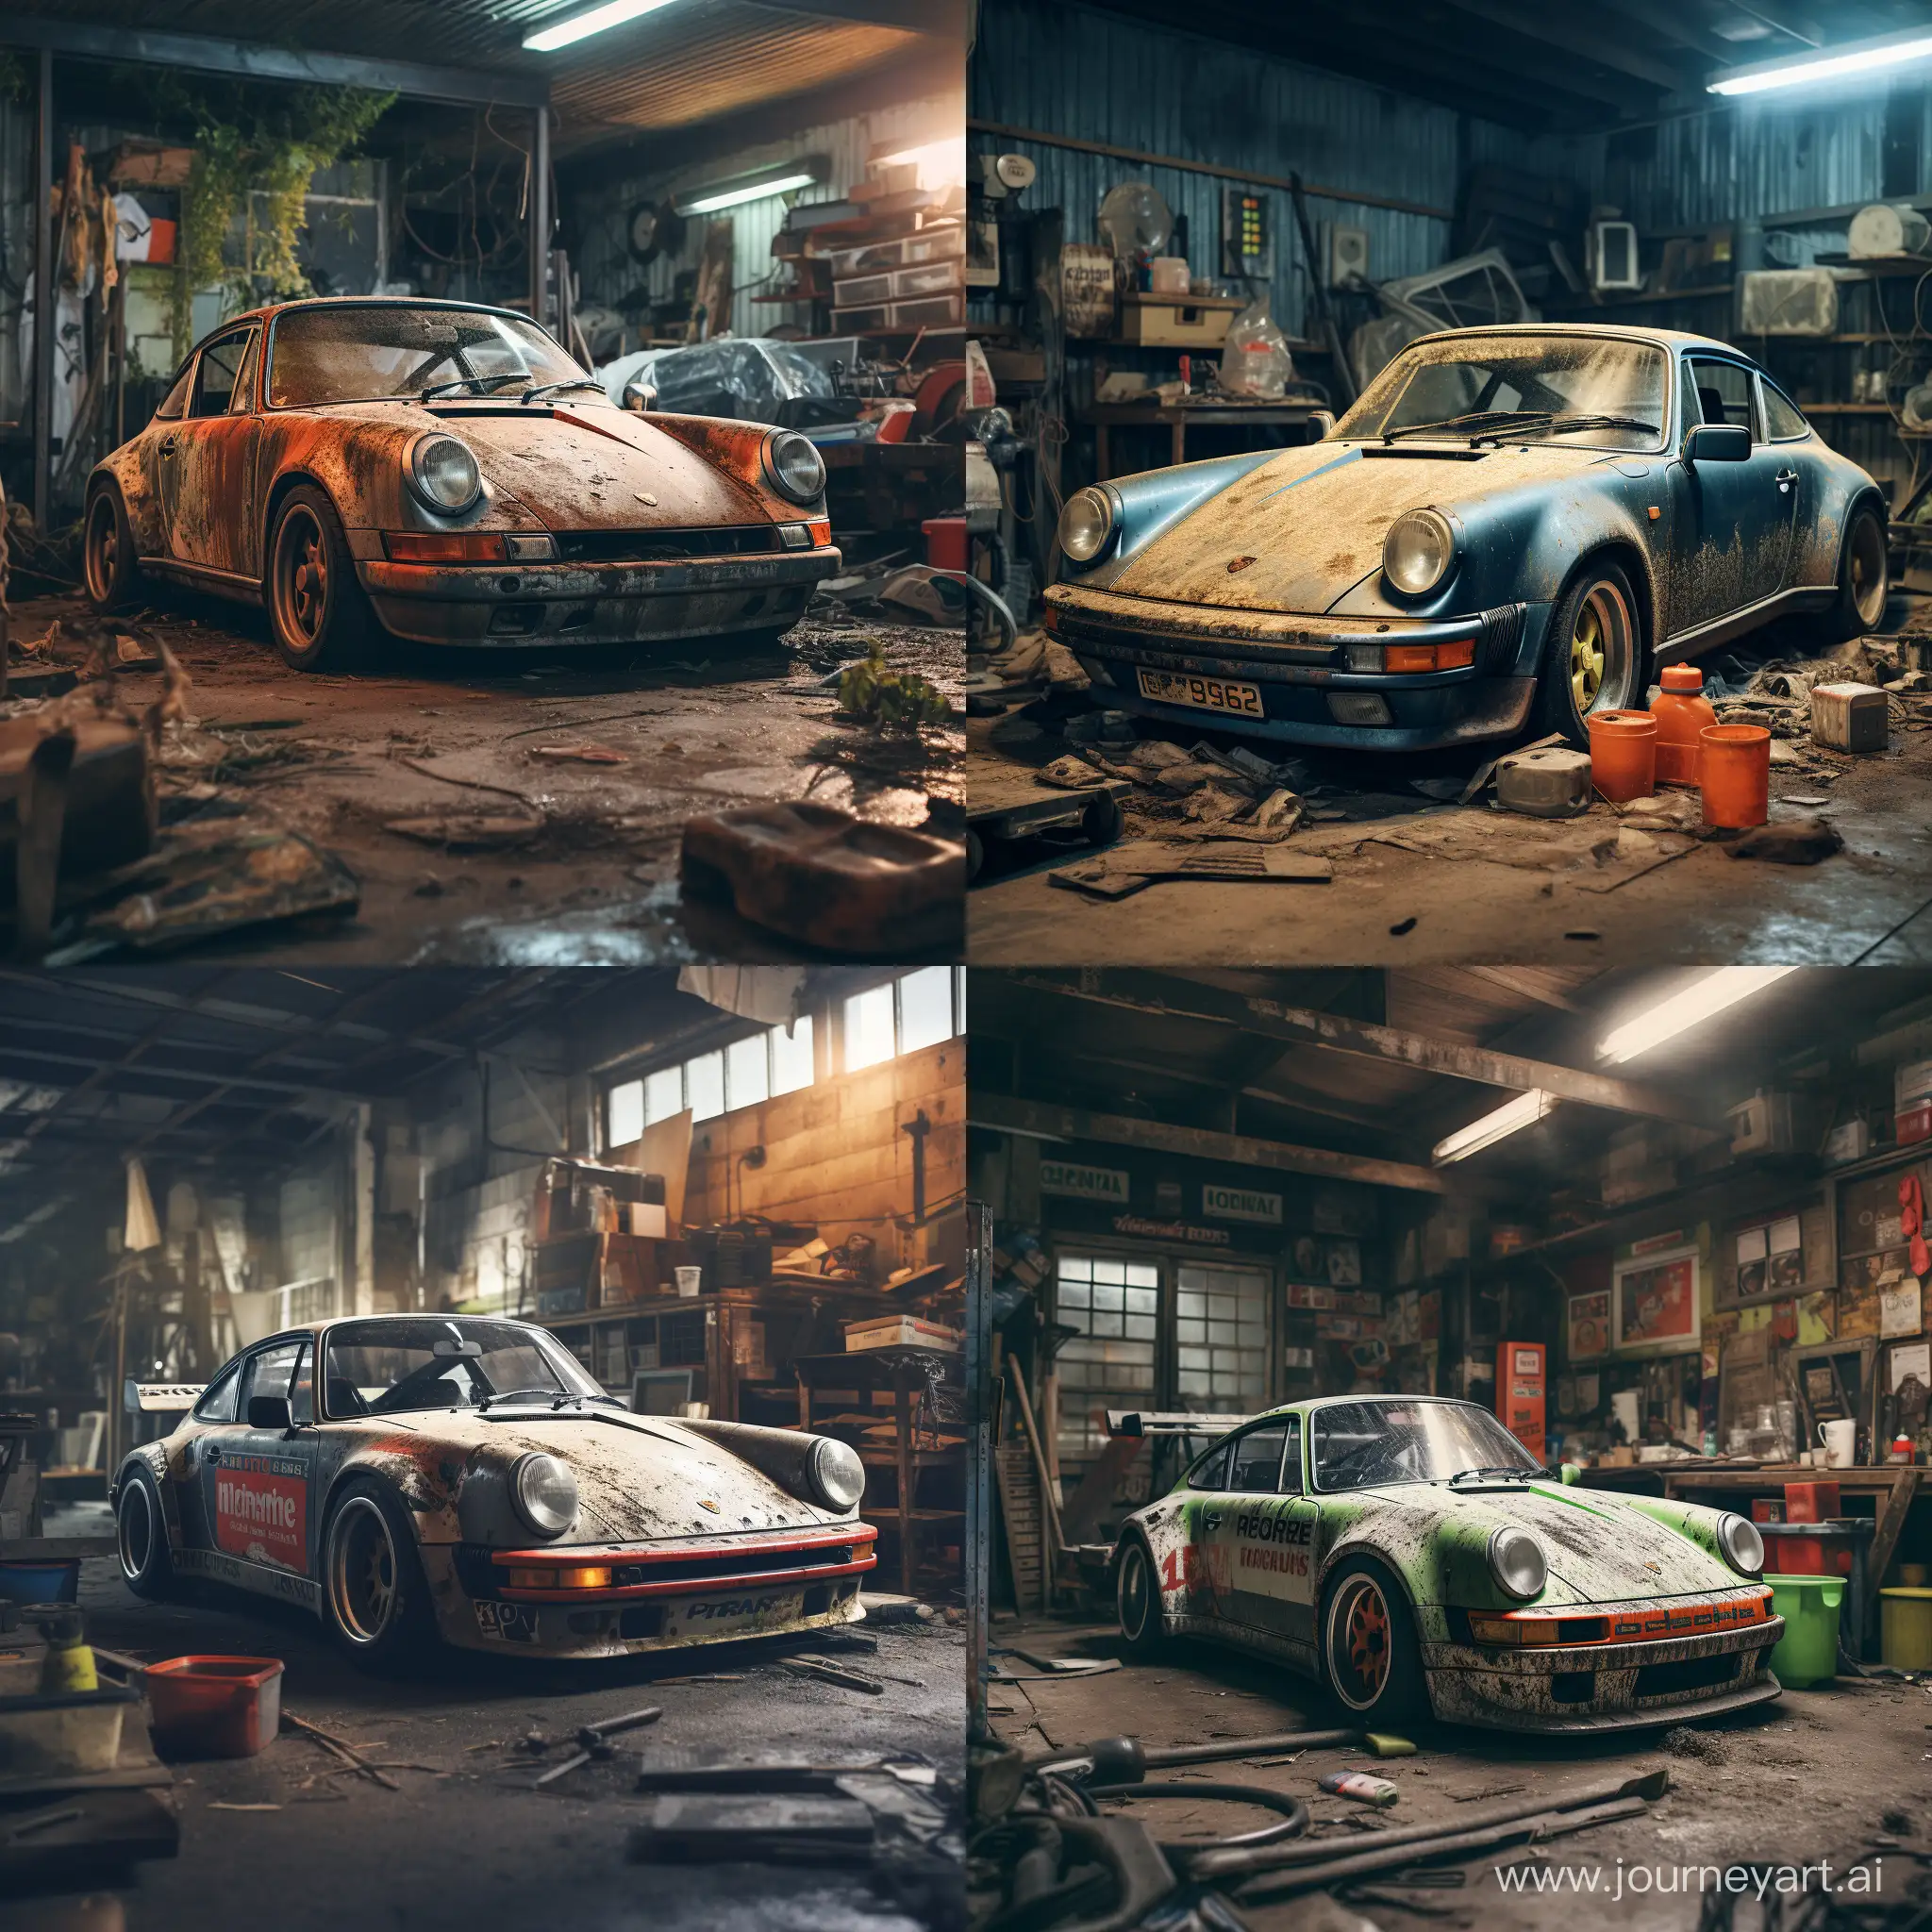 Vintage-Porsches-Resting-in-Rustic-Garage